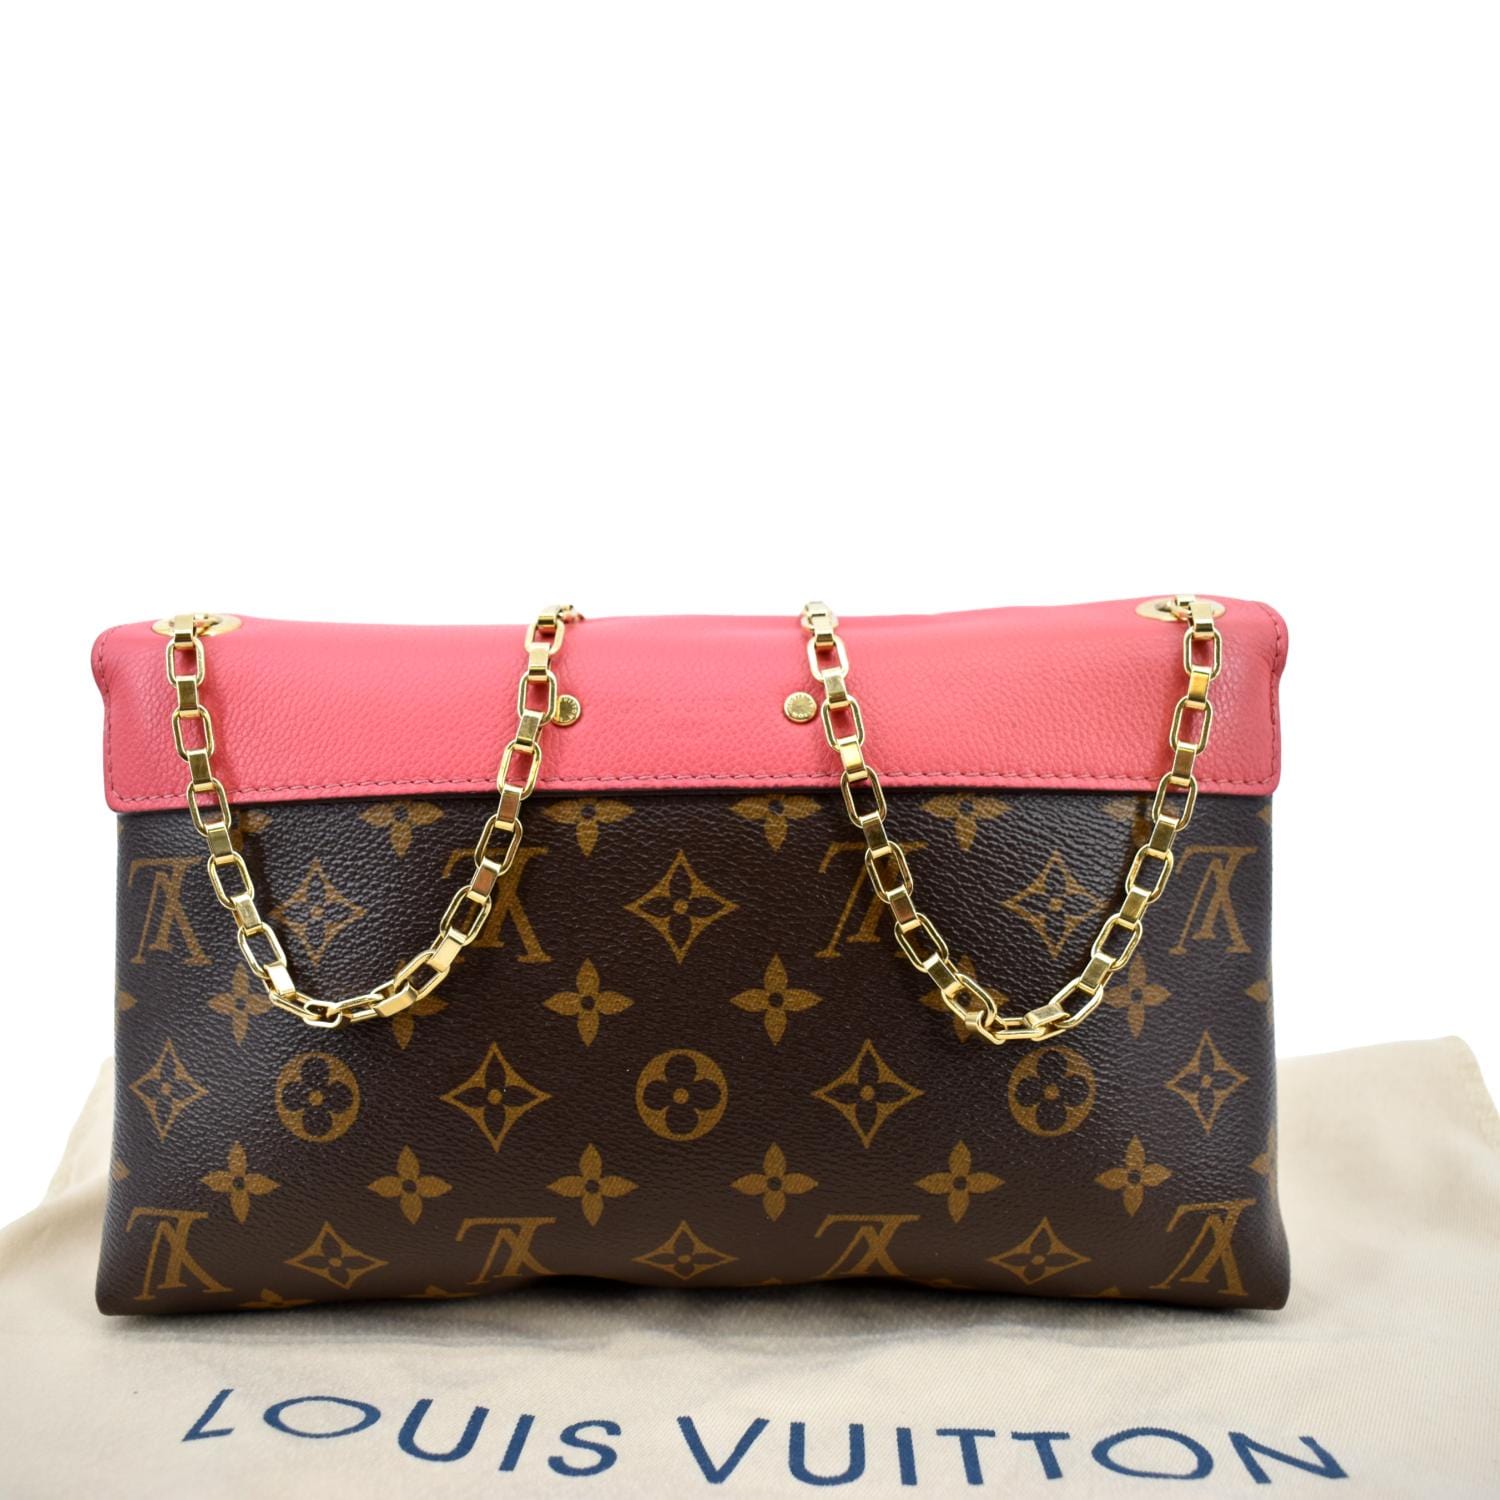 Louis Vuitton Vintage Classic Shopper Tote, $899